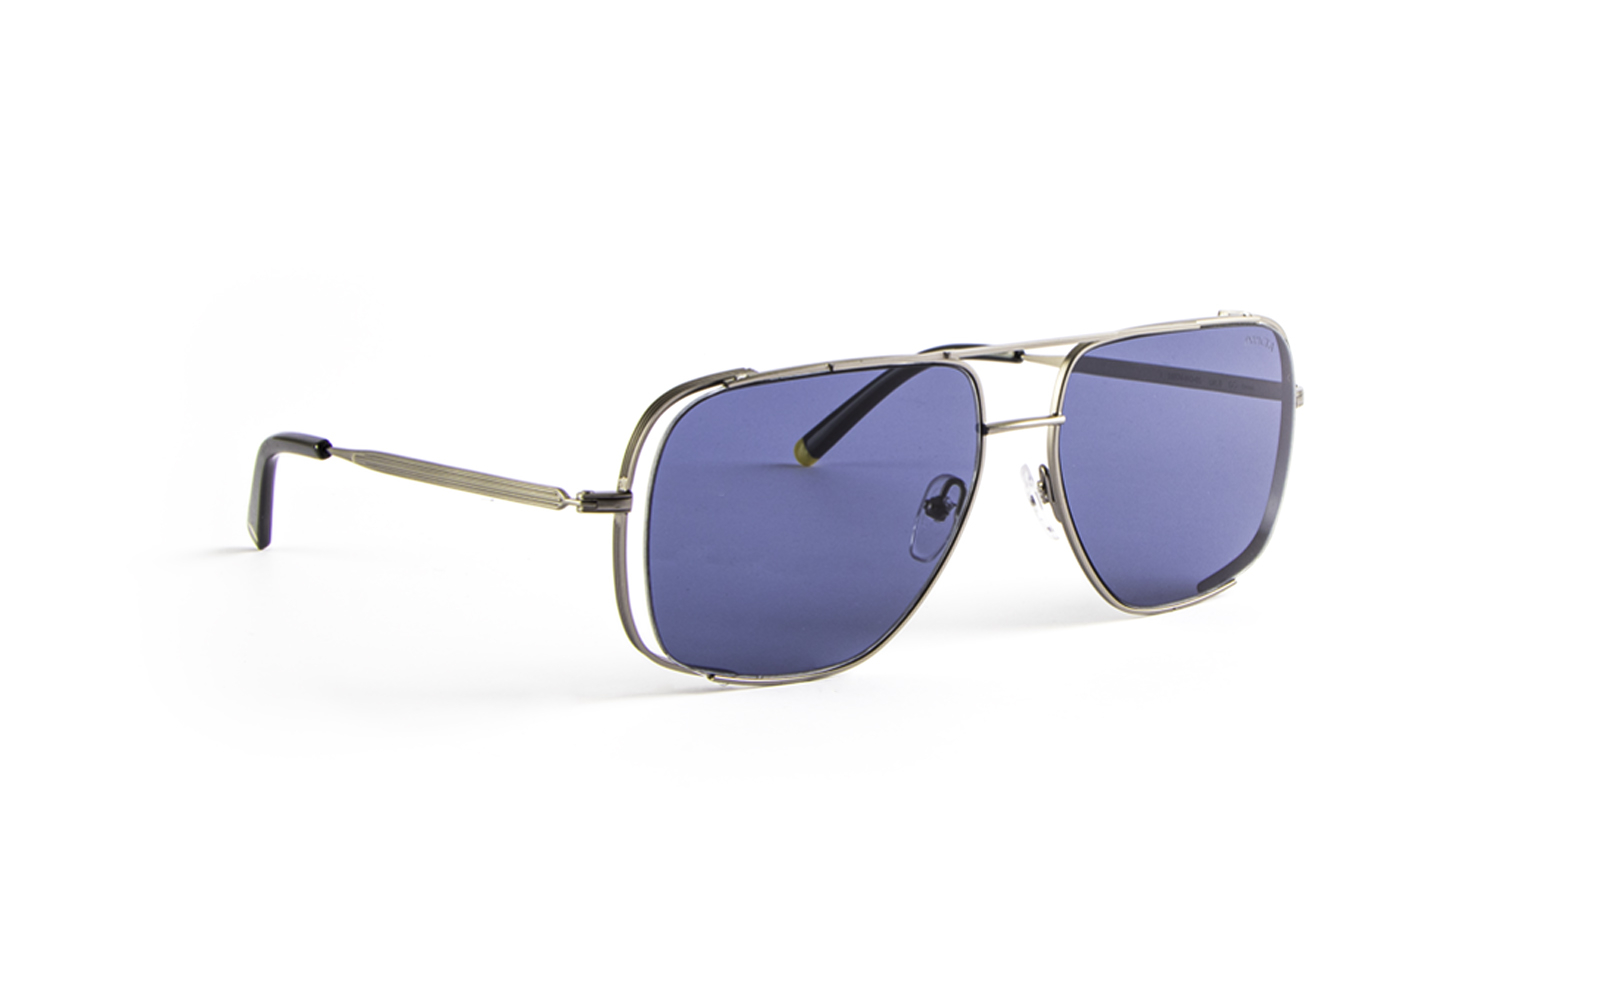 Invicta Men's I-Force Square Sunglasses, Purple (16974-IFO-01)